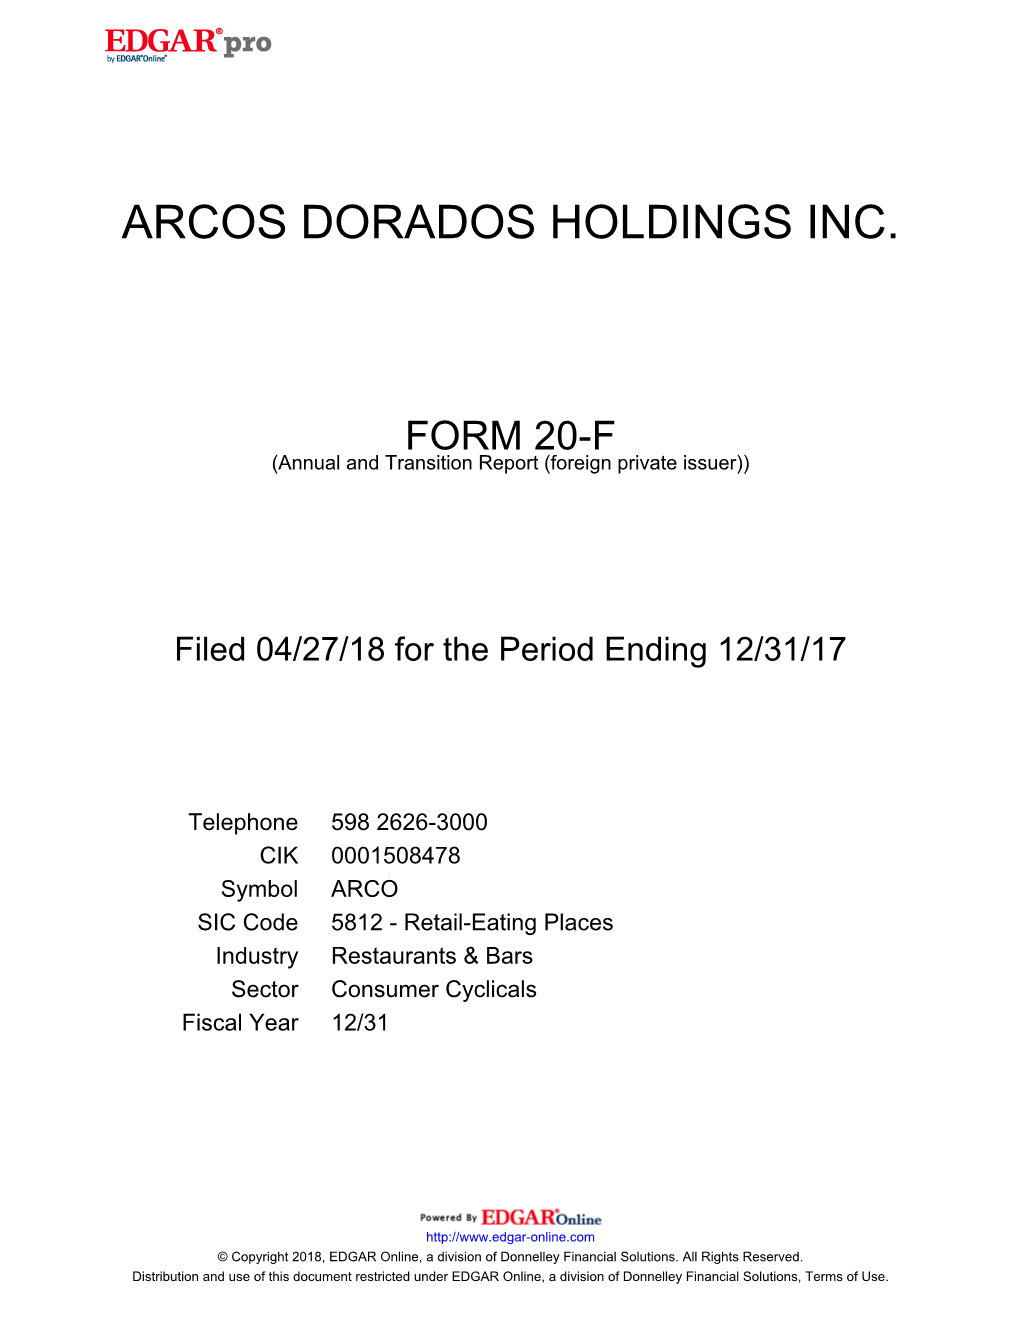 Arcos Dorados Holdings Inc